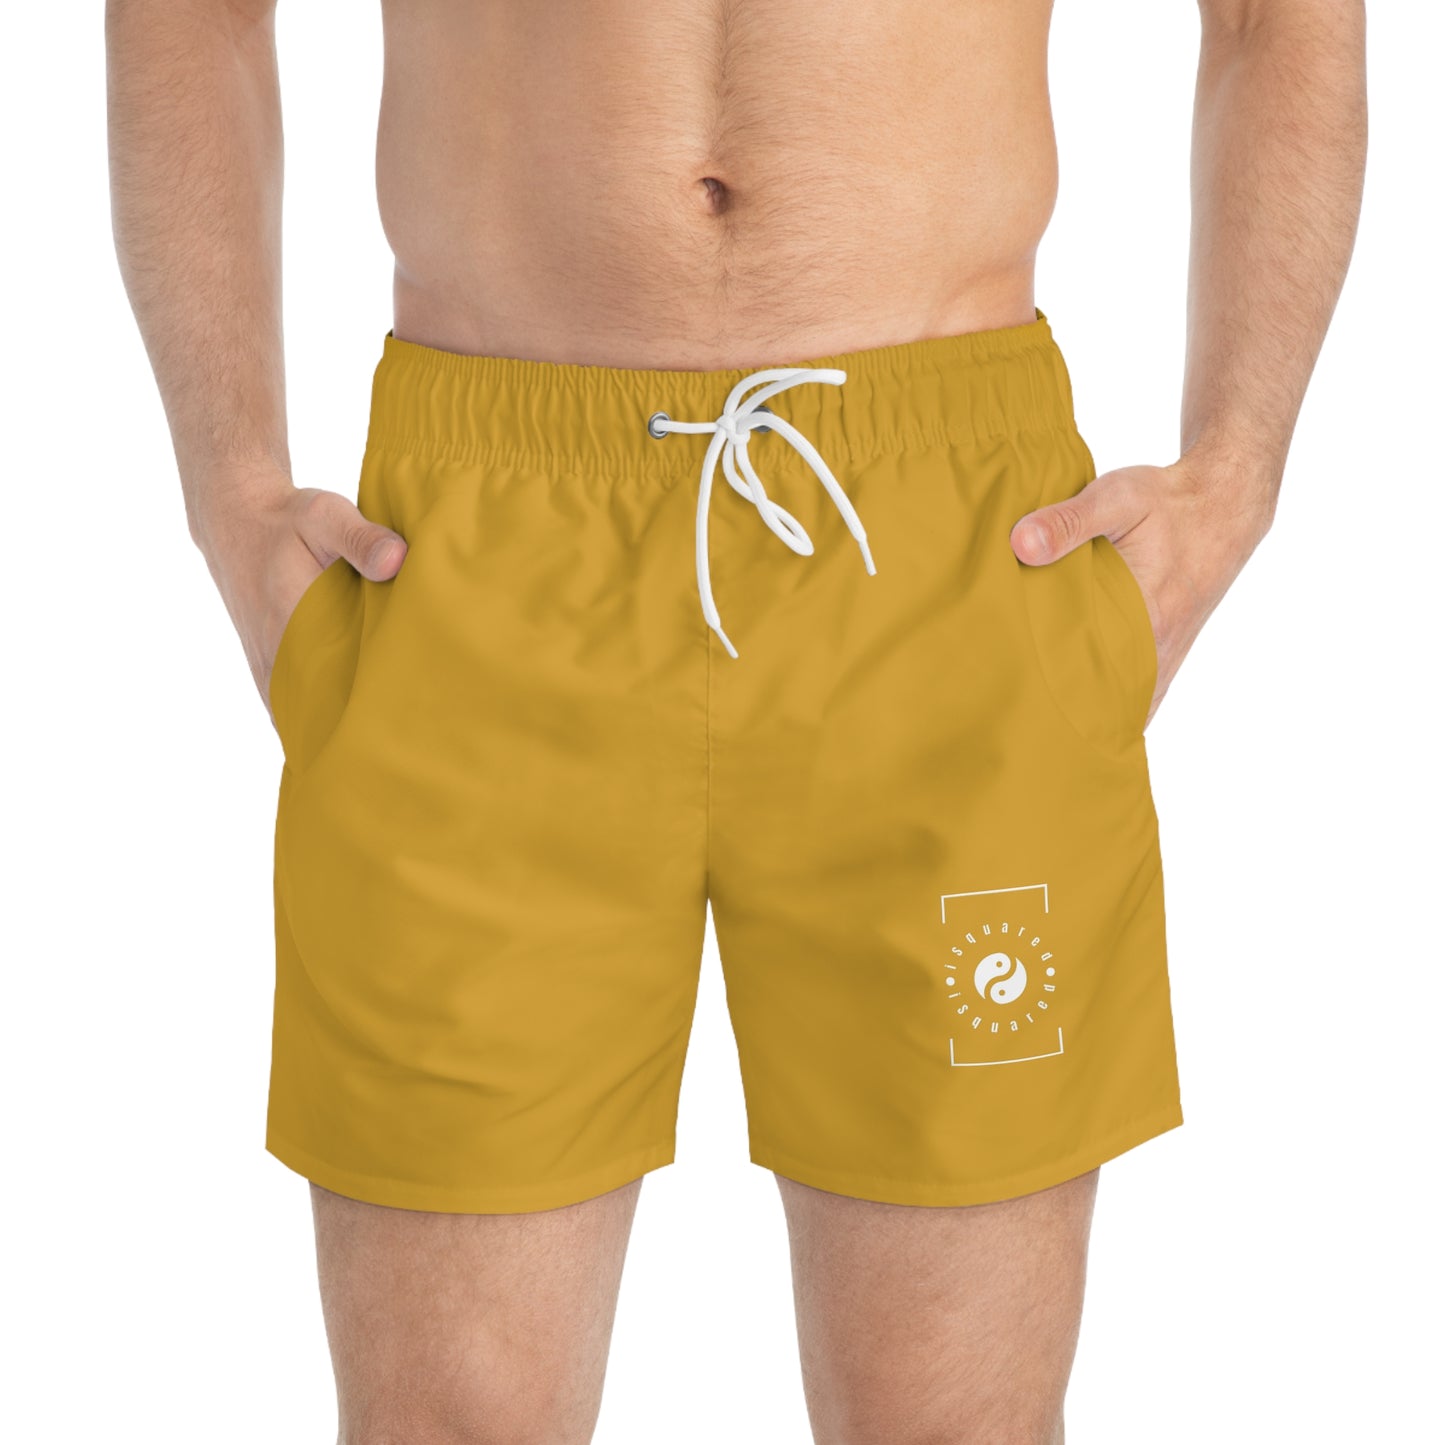 DAA520 Goldenrod - Swim Trunks for Men